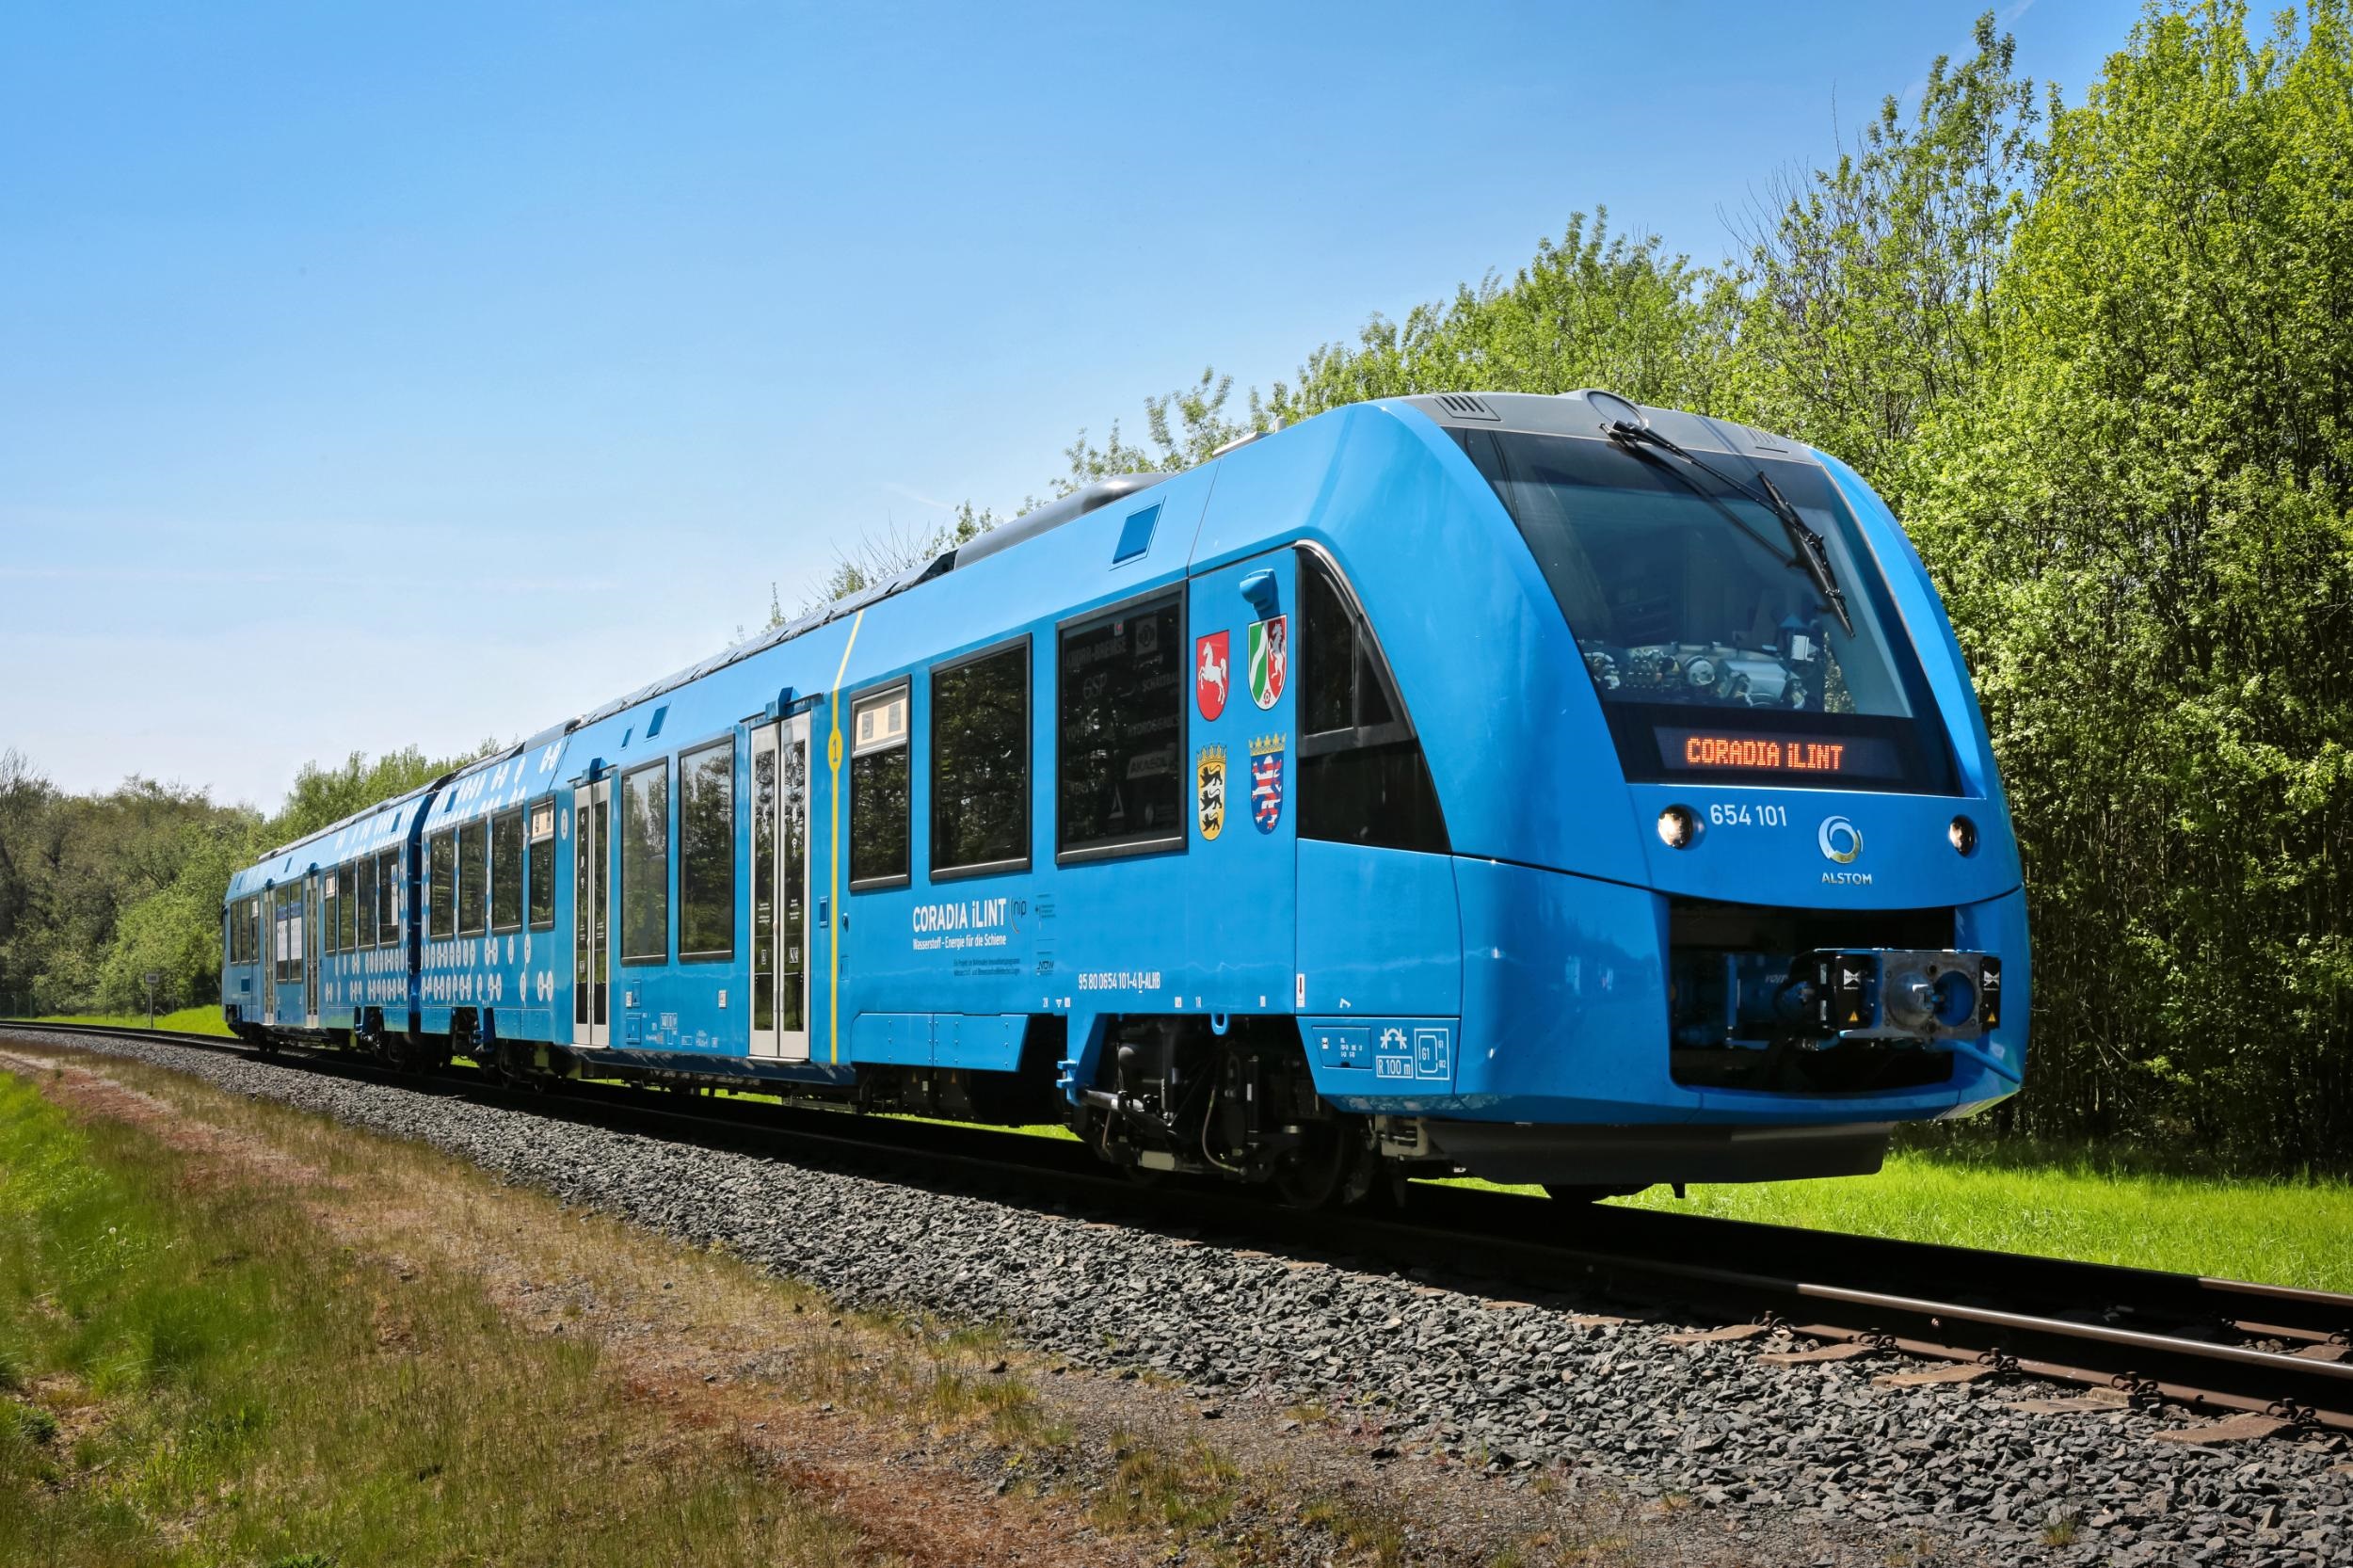 More information about "Coradia iLint: Το πρώτο υδρογονοκίνητο επιβατικό τρένο από την Alstom στο Κεμπέκ"